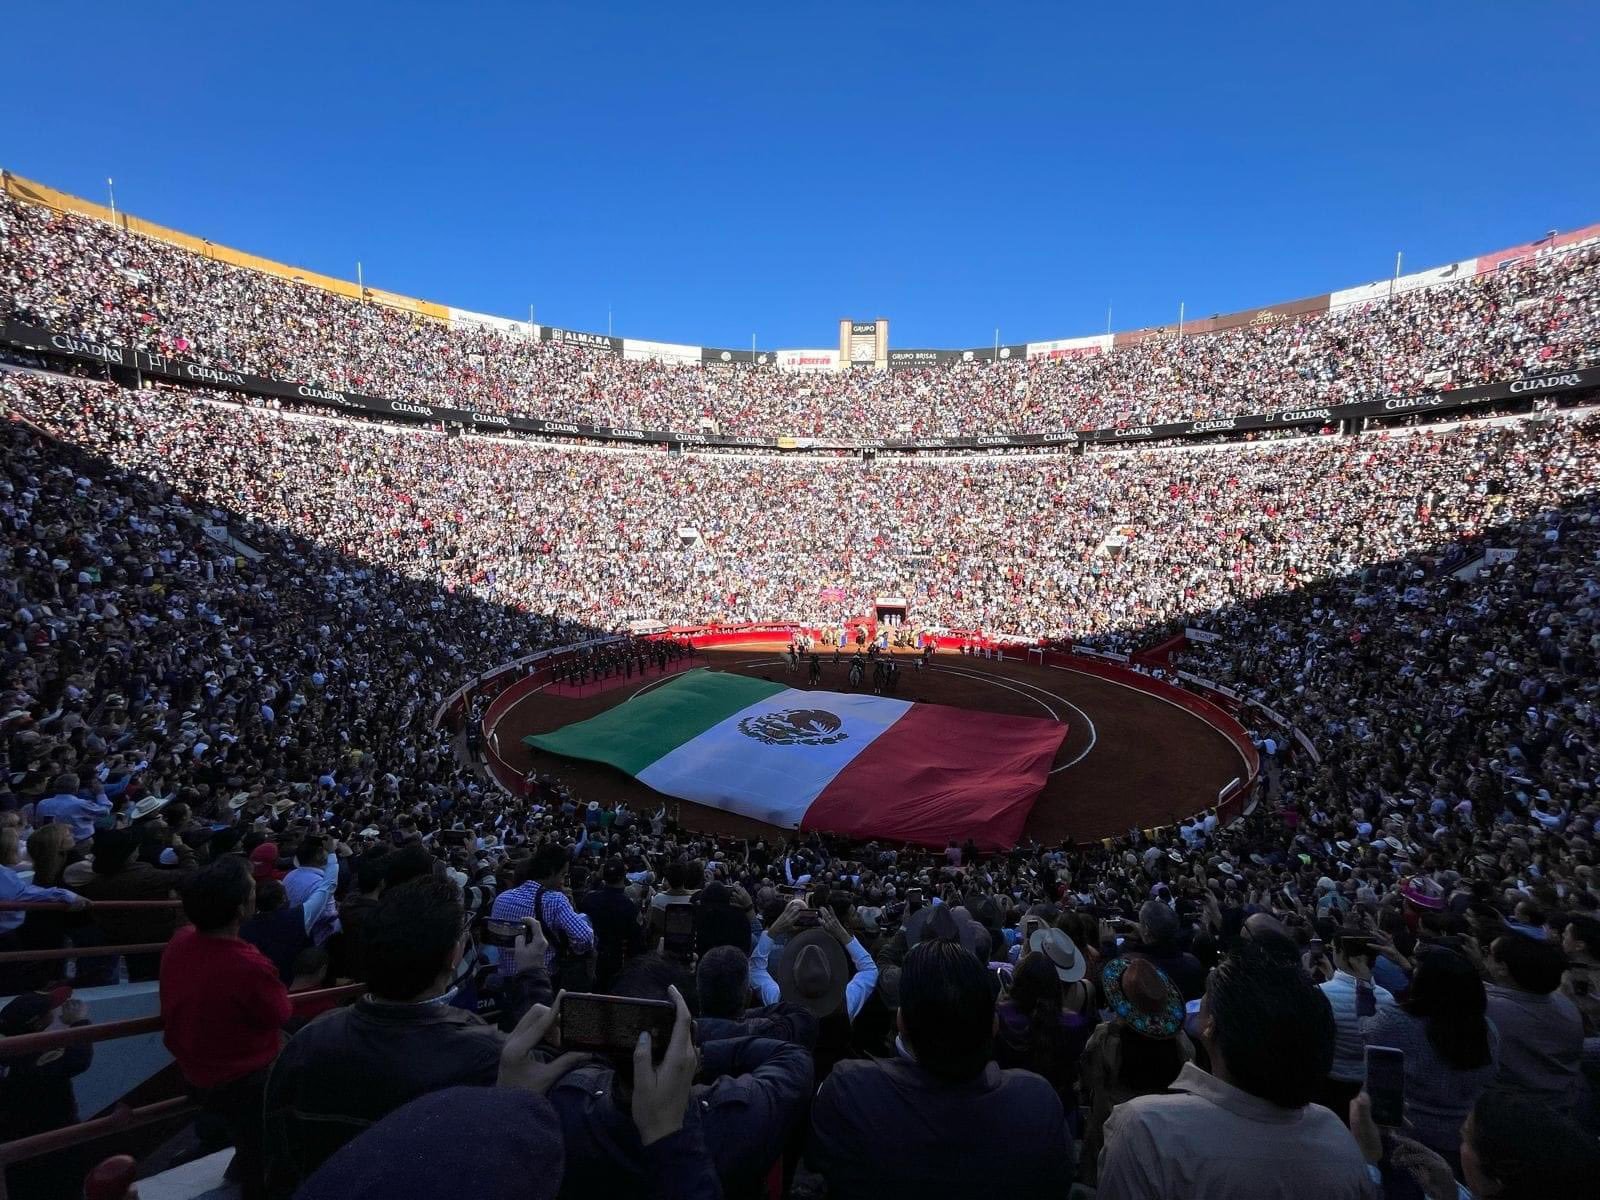 Plaza Mxico celebra Aniversario 78 con lleno en su recinto